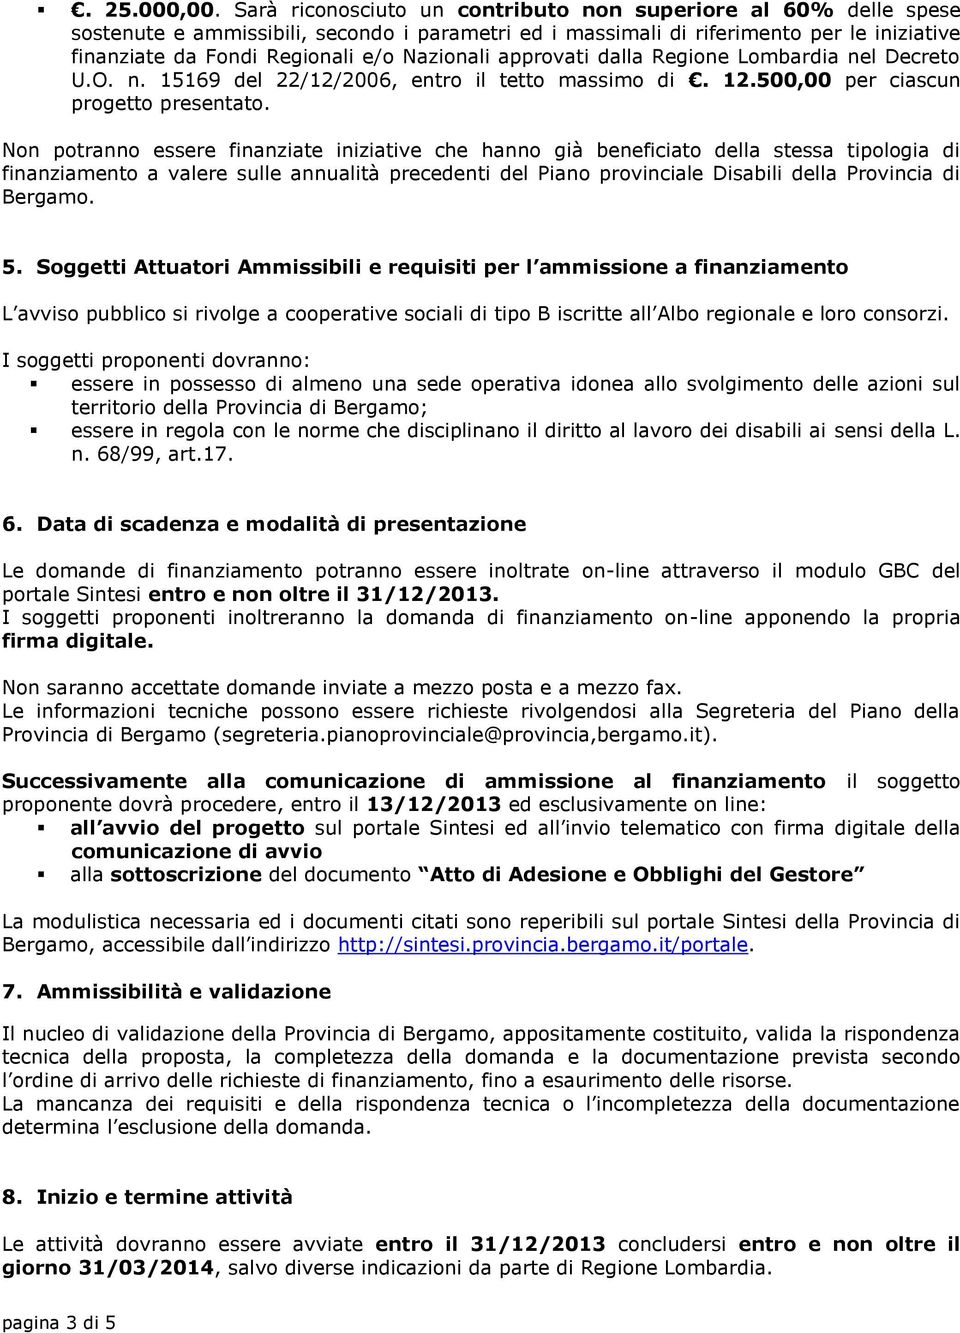 Nazionali approvati dalla Regione Lombardia nel Decreto U.O. n. 15169 del 22/12/2006, entro il tetto massimo di. 12.500,00 per ciascun progetto presentato.